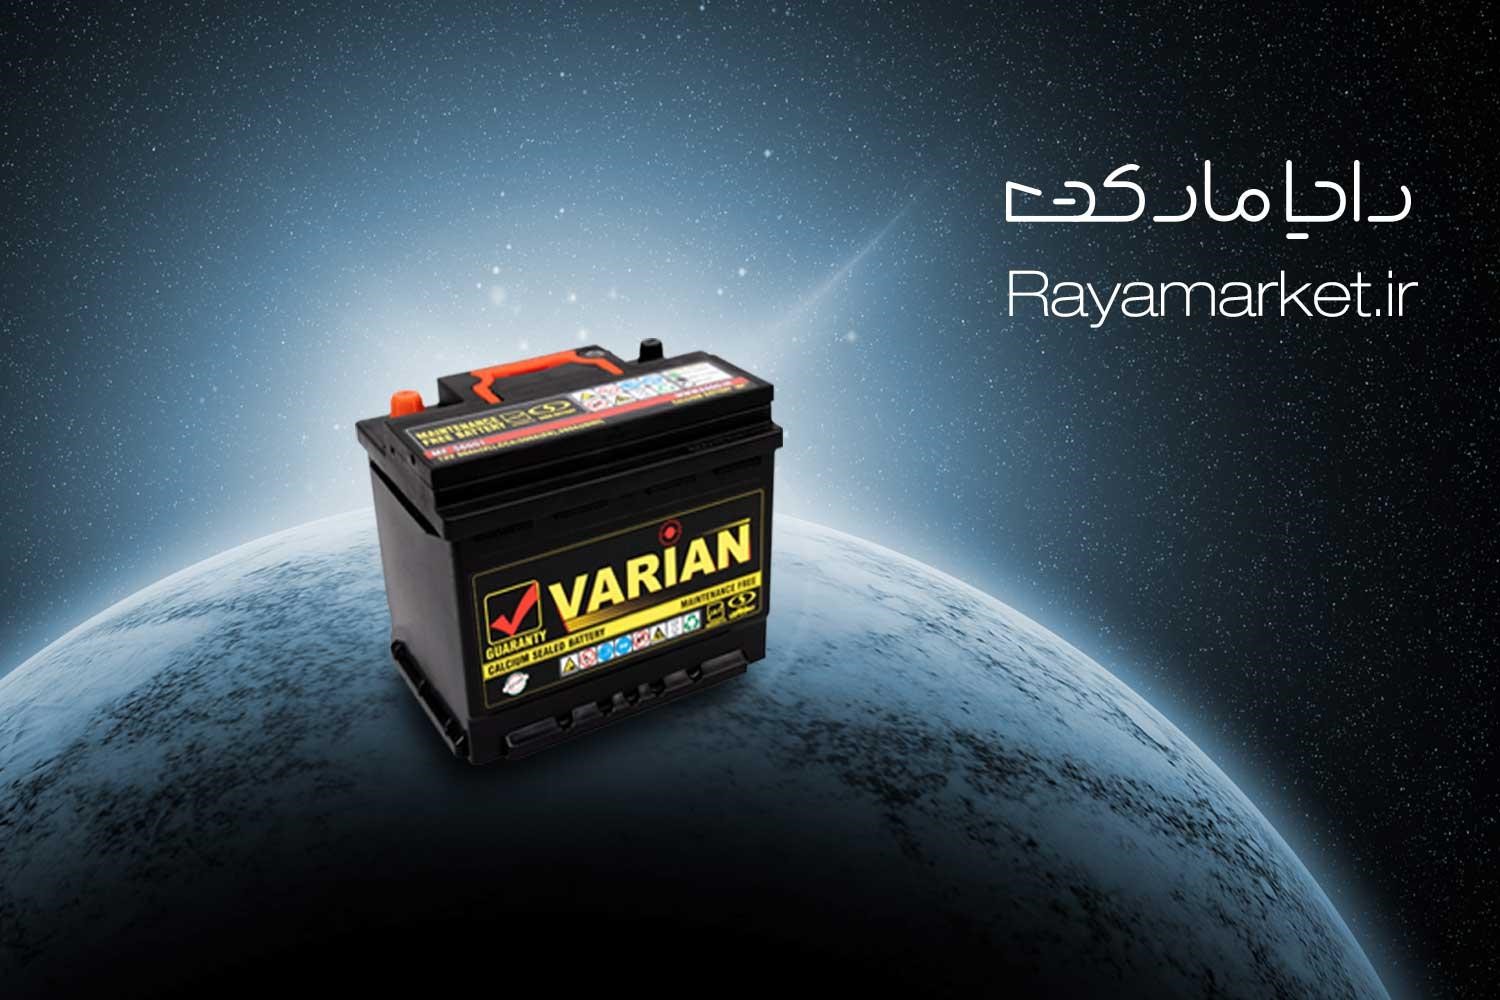 باتری ماشینتو از رایا مارکت آنلاین و خوش قیمت بخر!